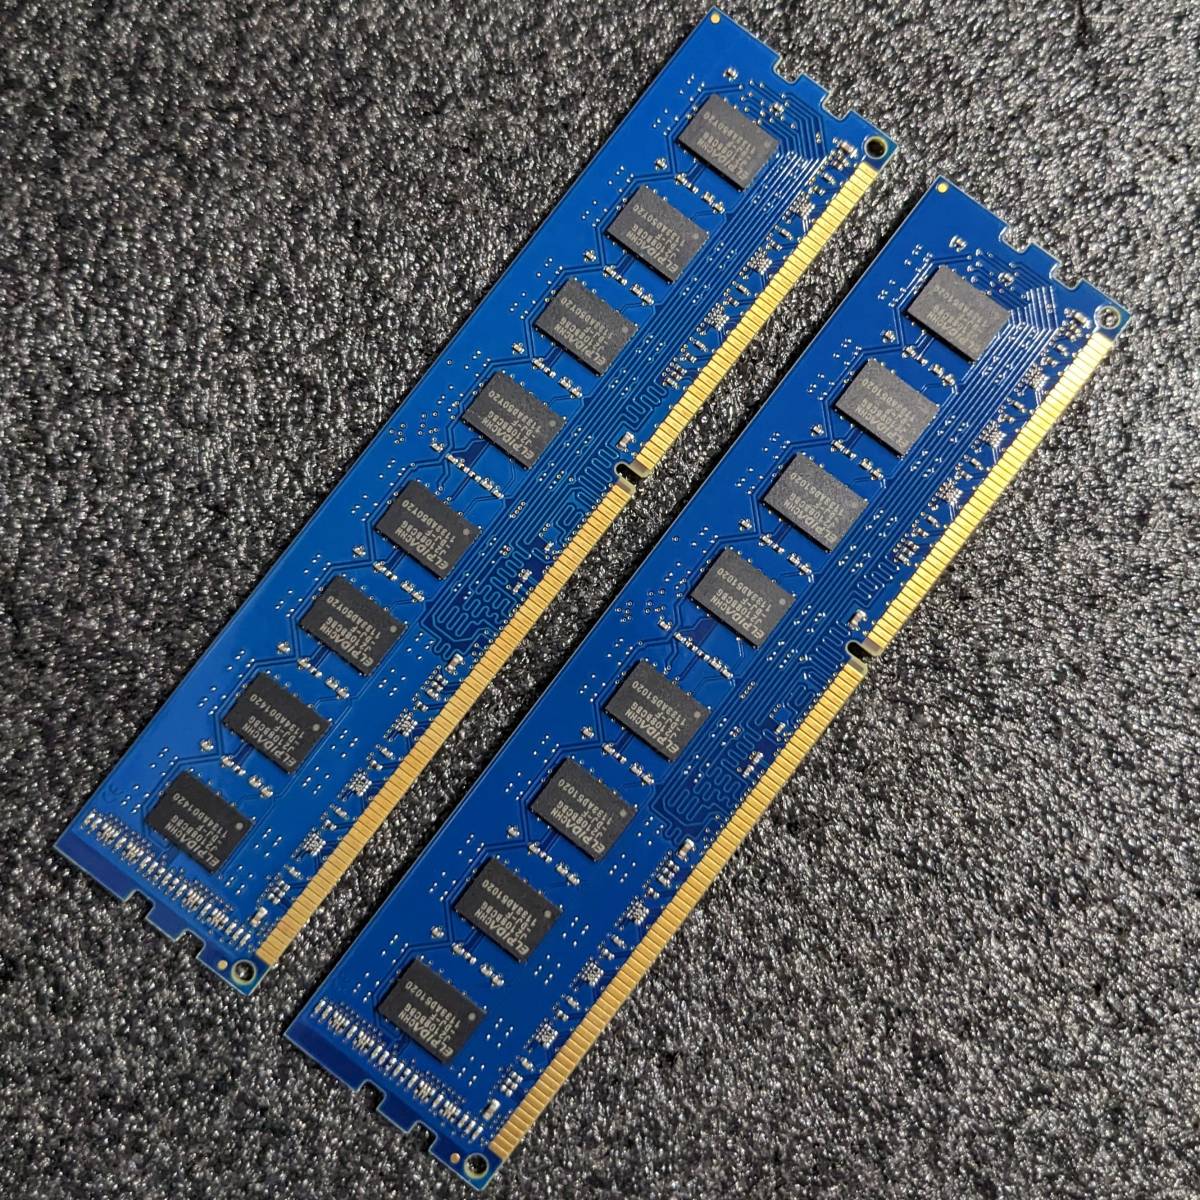 【中古】DDR3メモリ 8GB(4GB2枚組) Kingston RBU1333D3U9D8G/4G [DDR3-1333 PC3-10600]_画像3